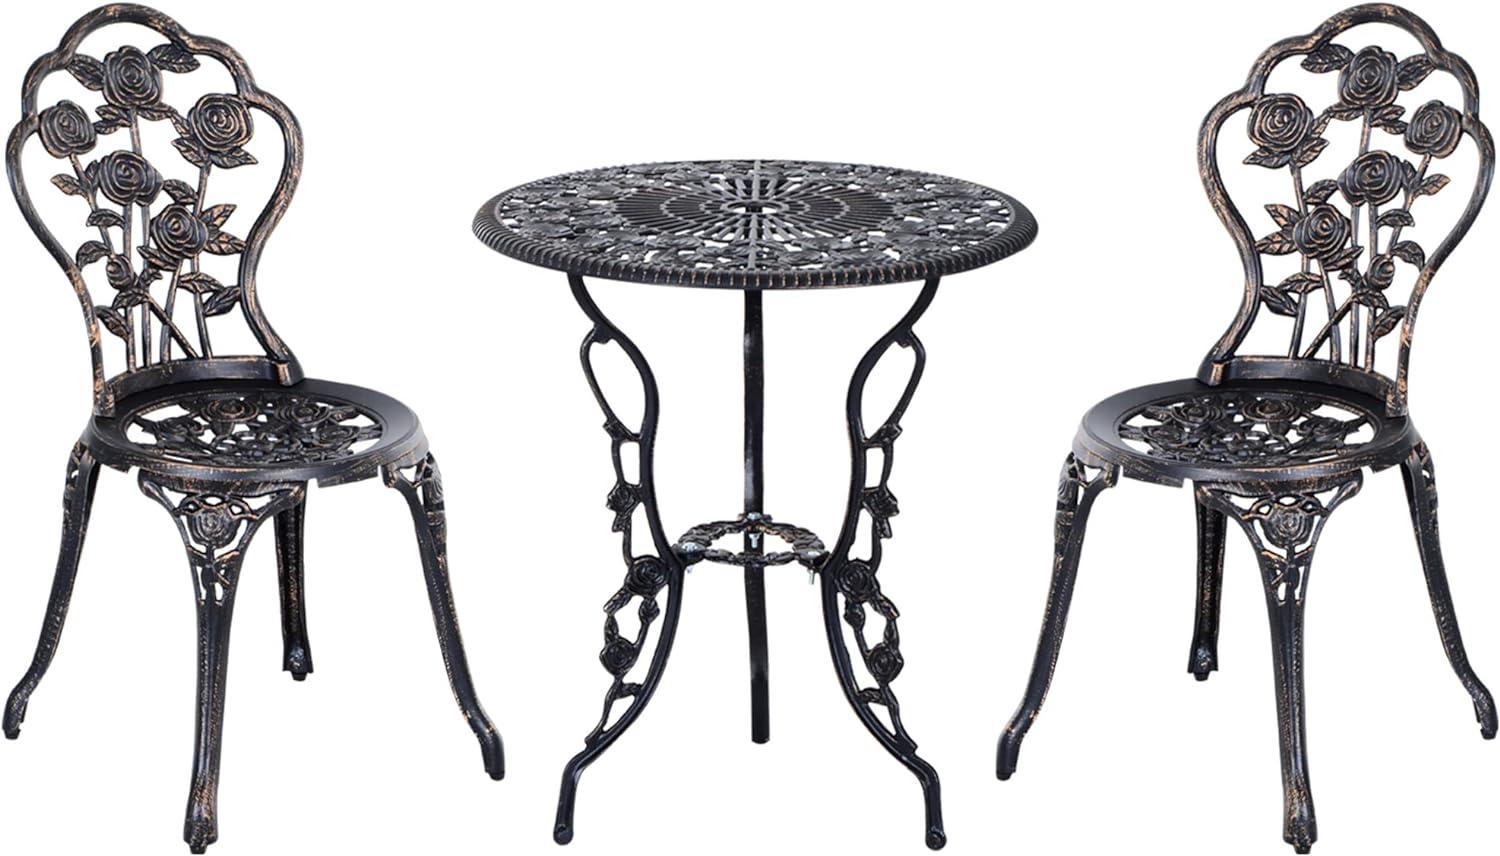 Outsunny - Gartenmöbel 3 tlg. Gartenset Sitzgruppe Tisch Stuhl Metall Bronze - schwarz - Outsunny Bild 1